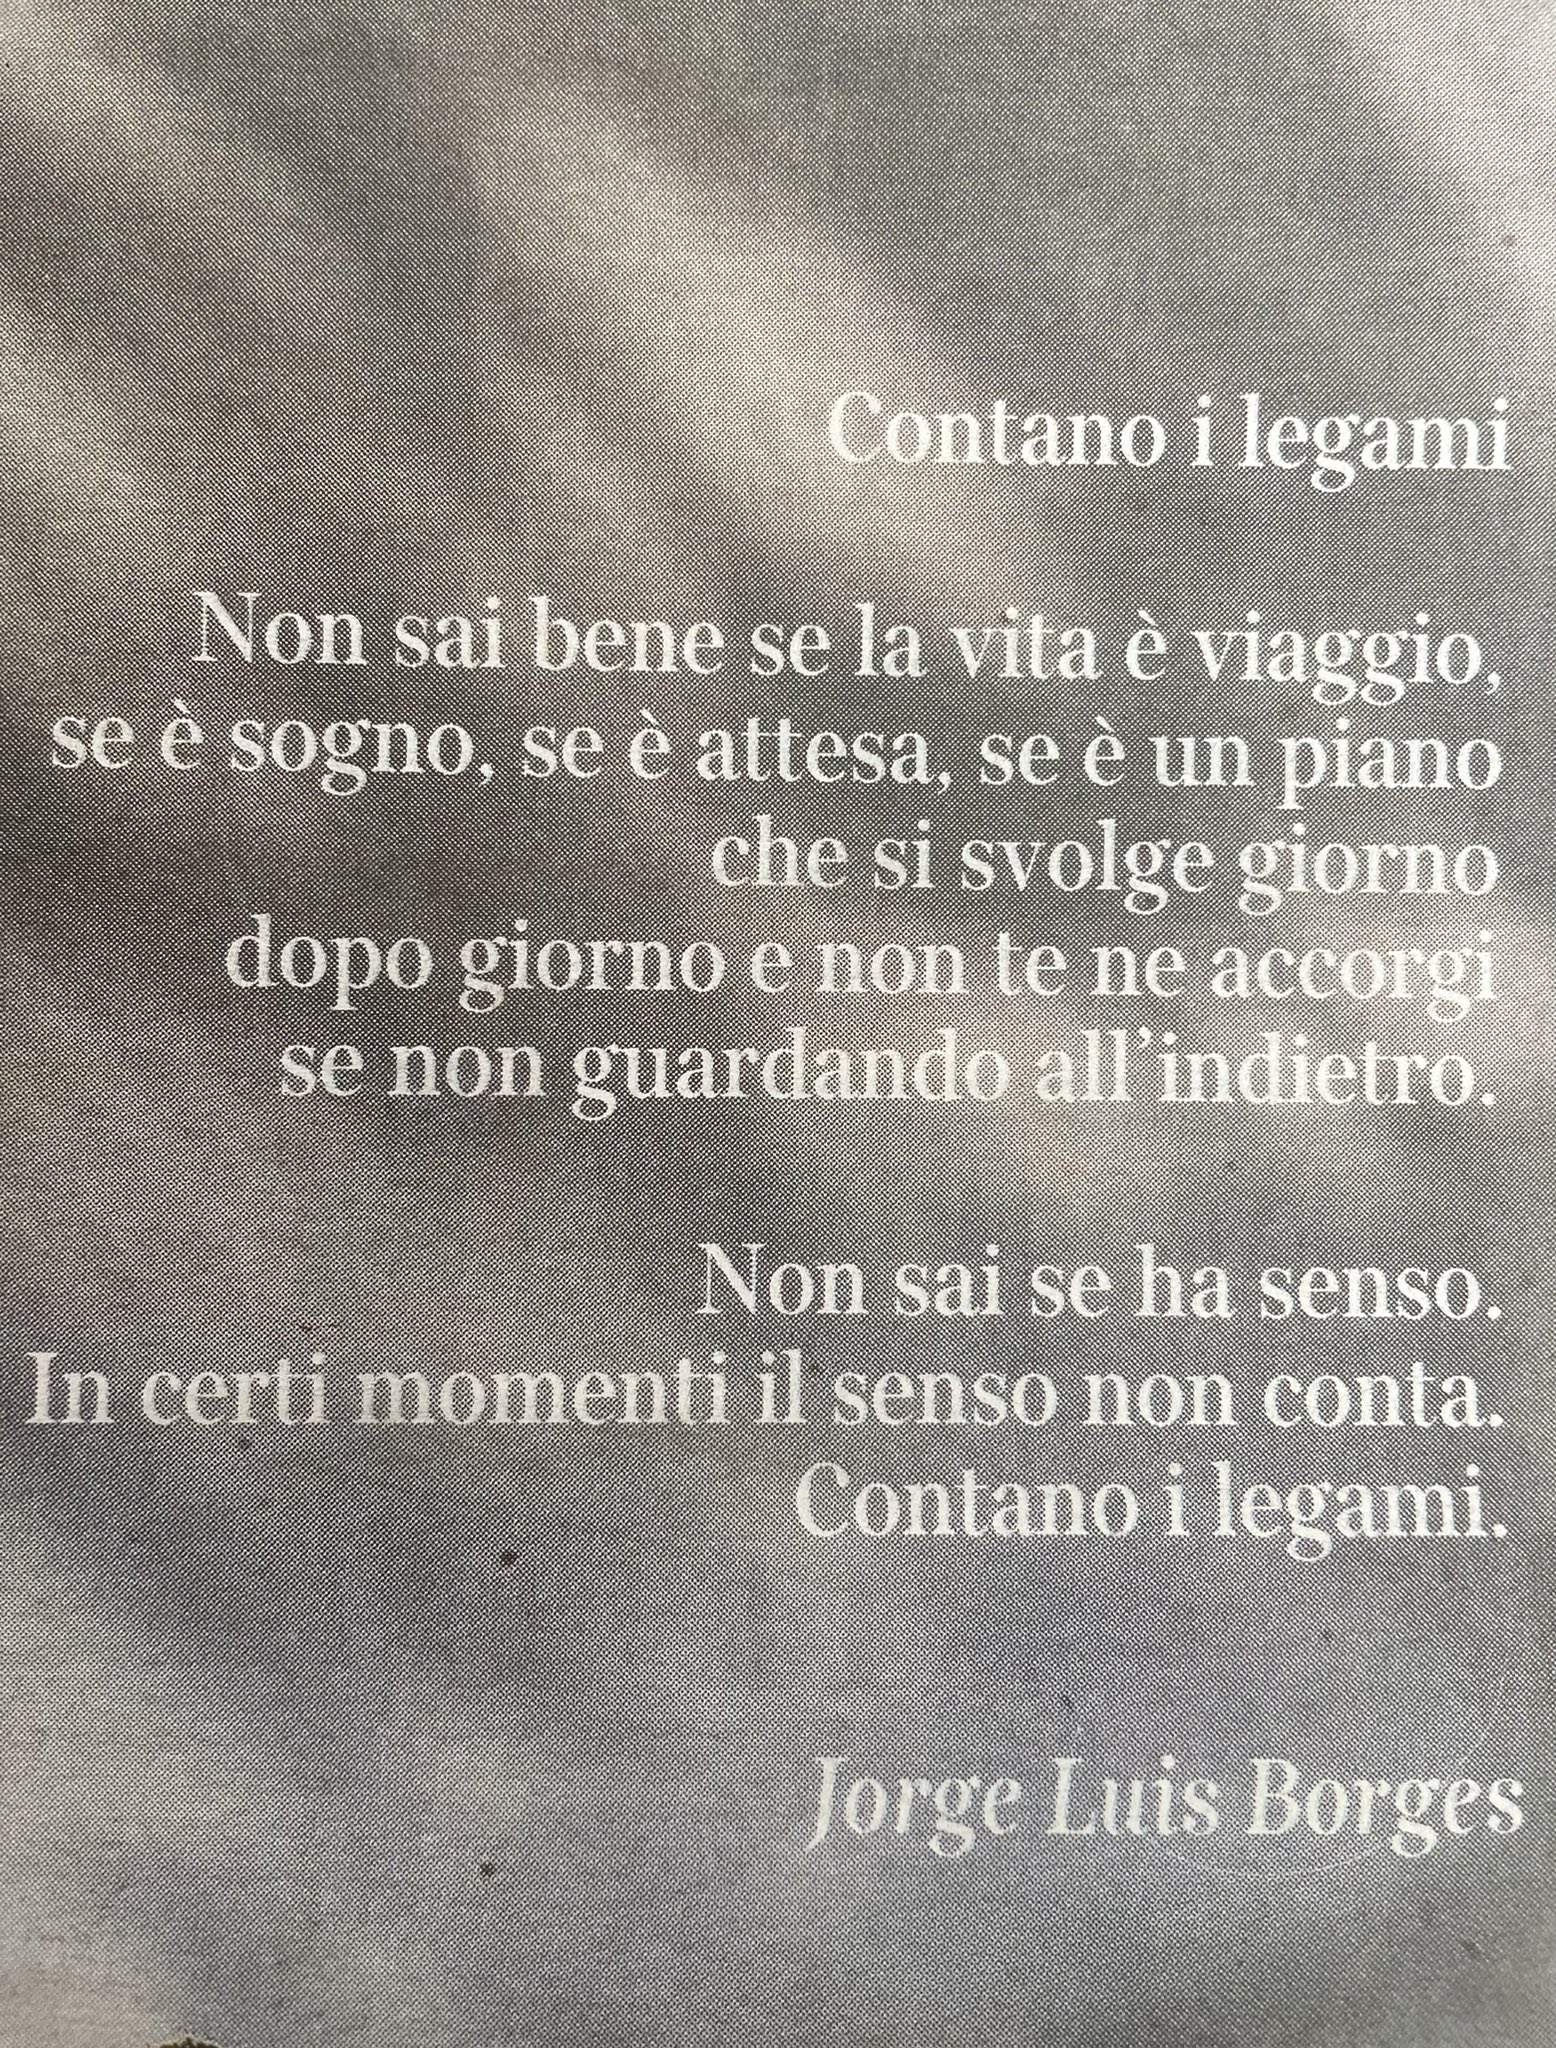 Giuseppe Ricci on X: Contano i legami @Borges__JL @TheBorgesCenter #533  @La_Lettura @Corriere  / X